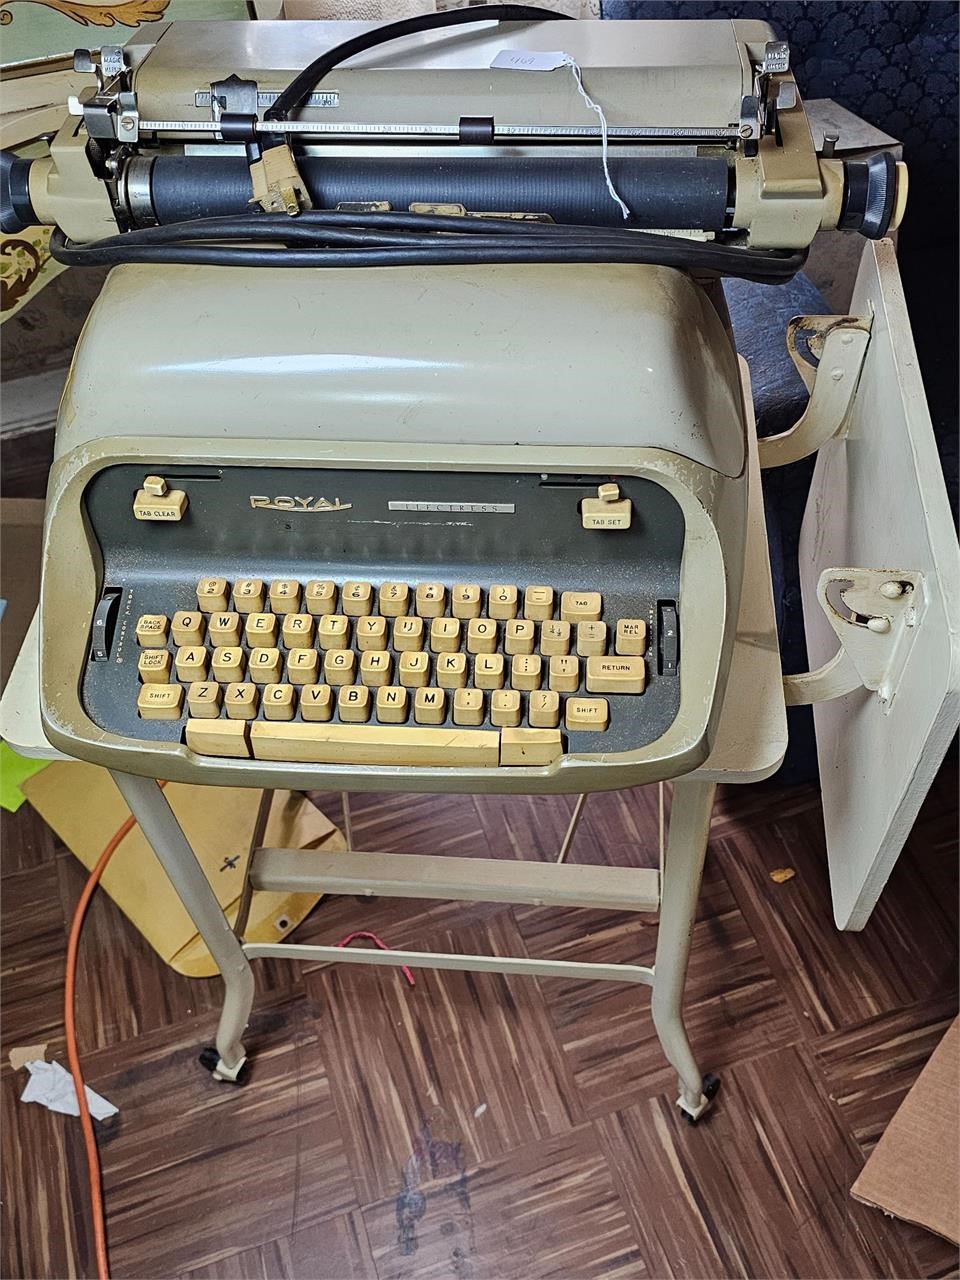 MCM Royal Typewriter & Typewriter stand